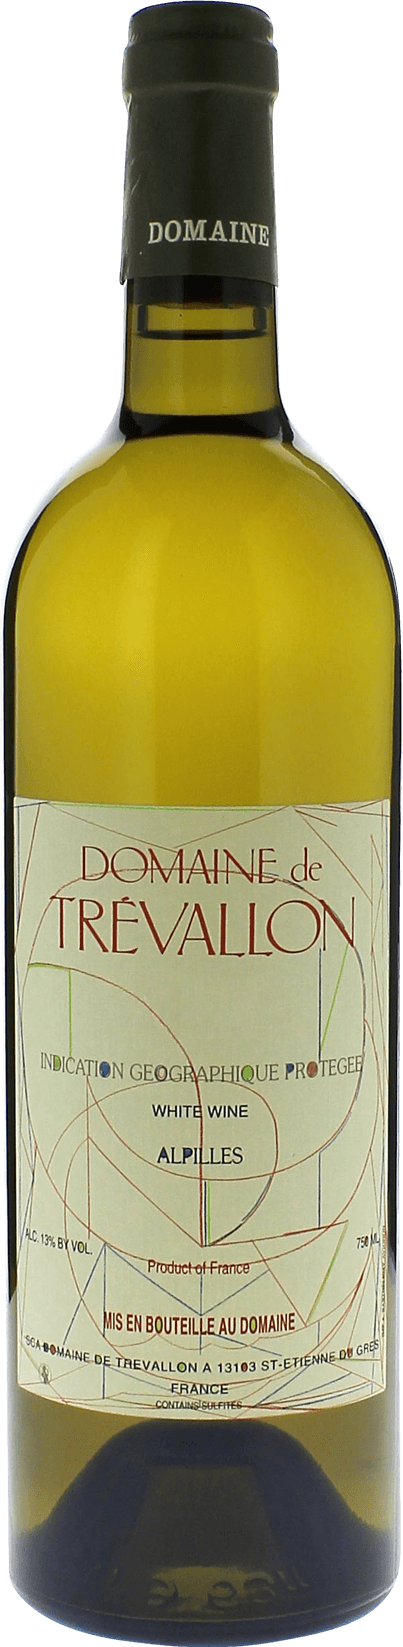 Domaine de trevallon blanc 2016  Vin de Pays, Provence